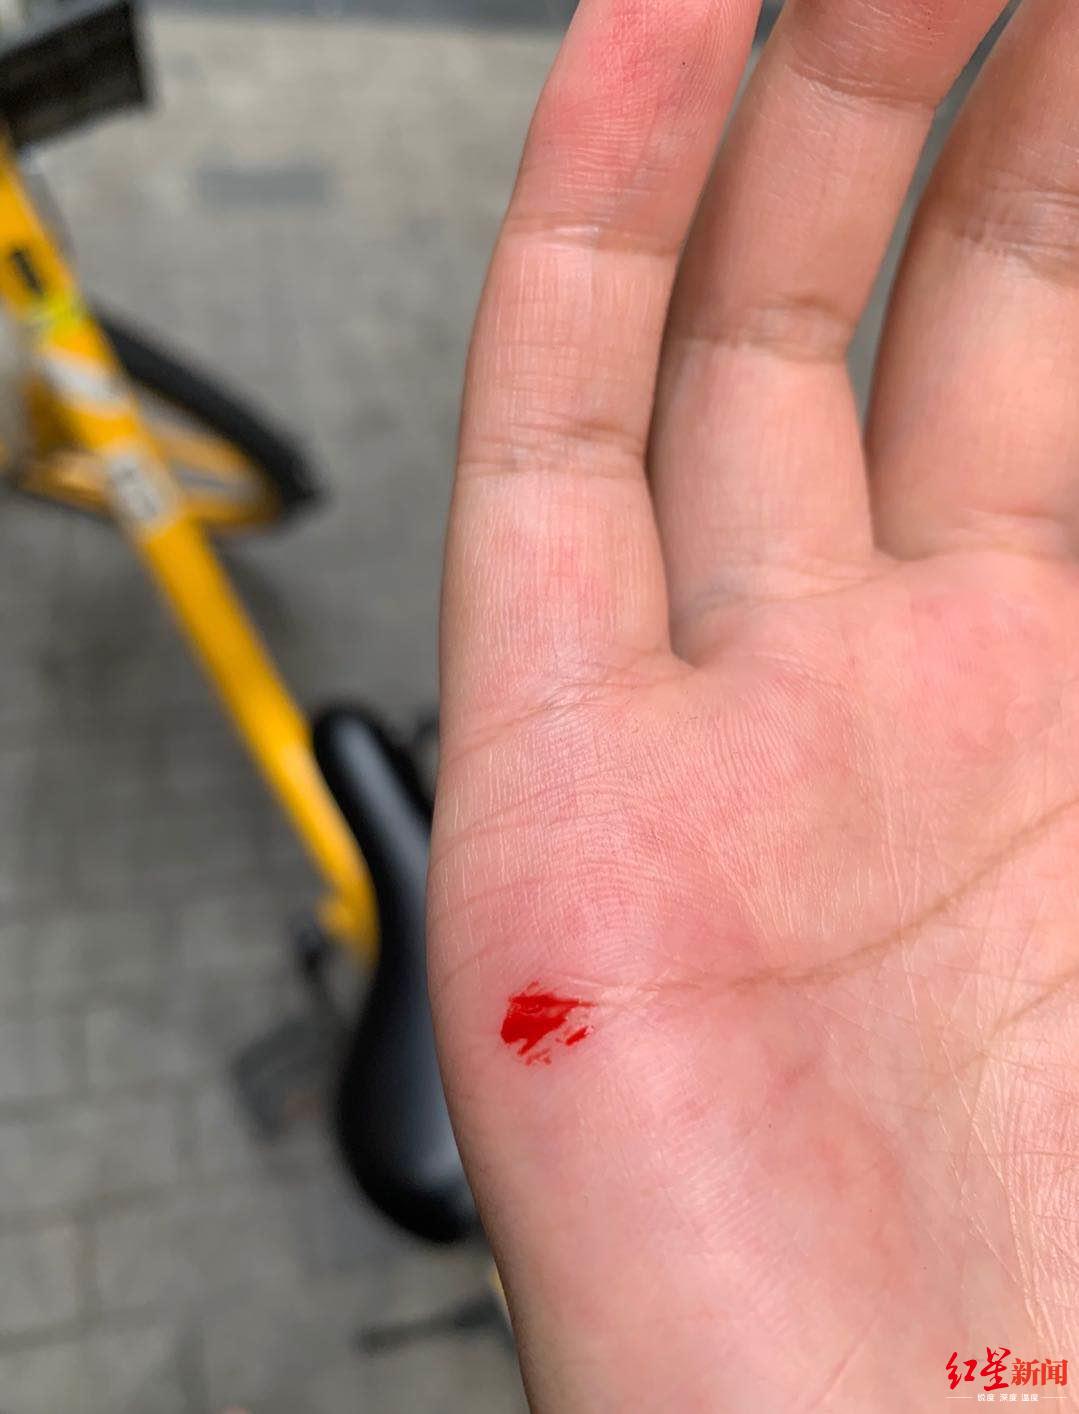 共享单车坐垫"插针"手掌被刺出血?美团:强烈谴责,将联合警方打击